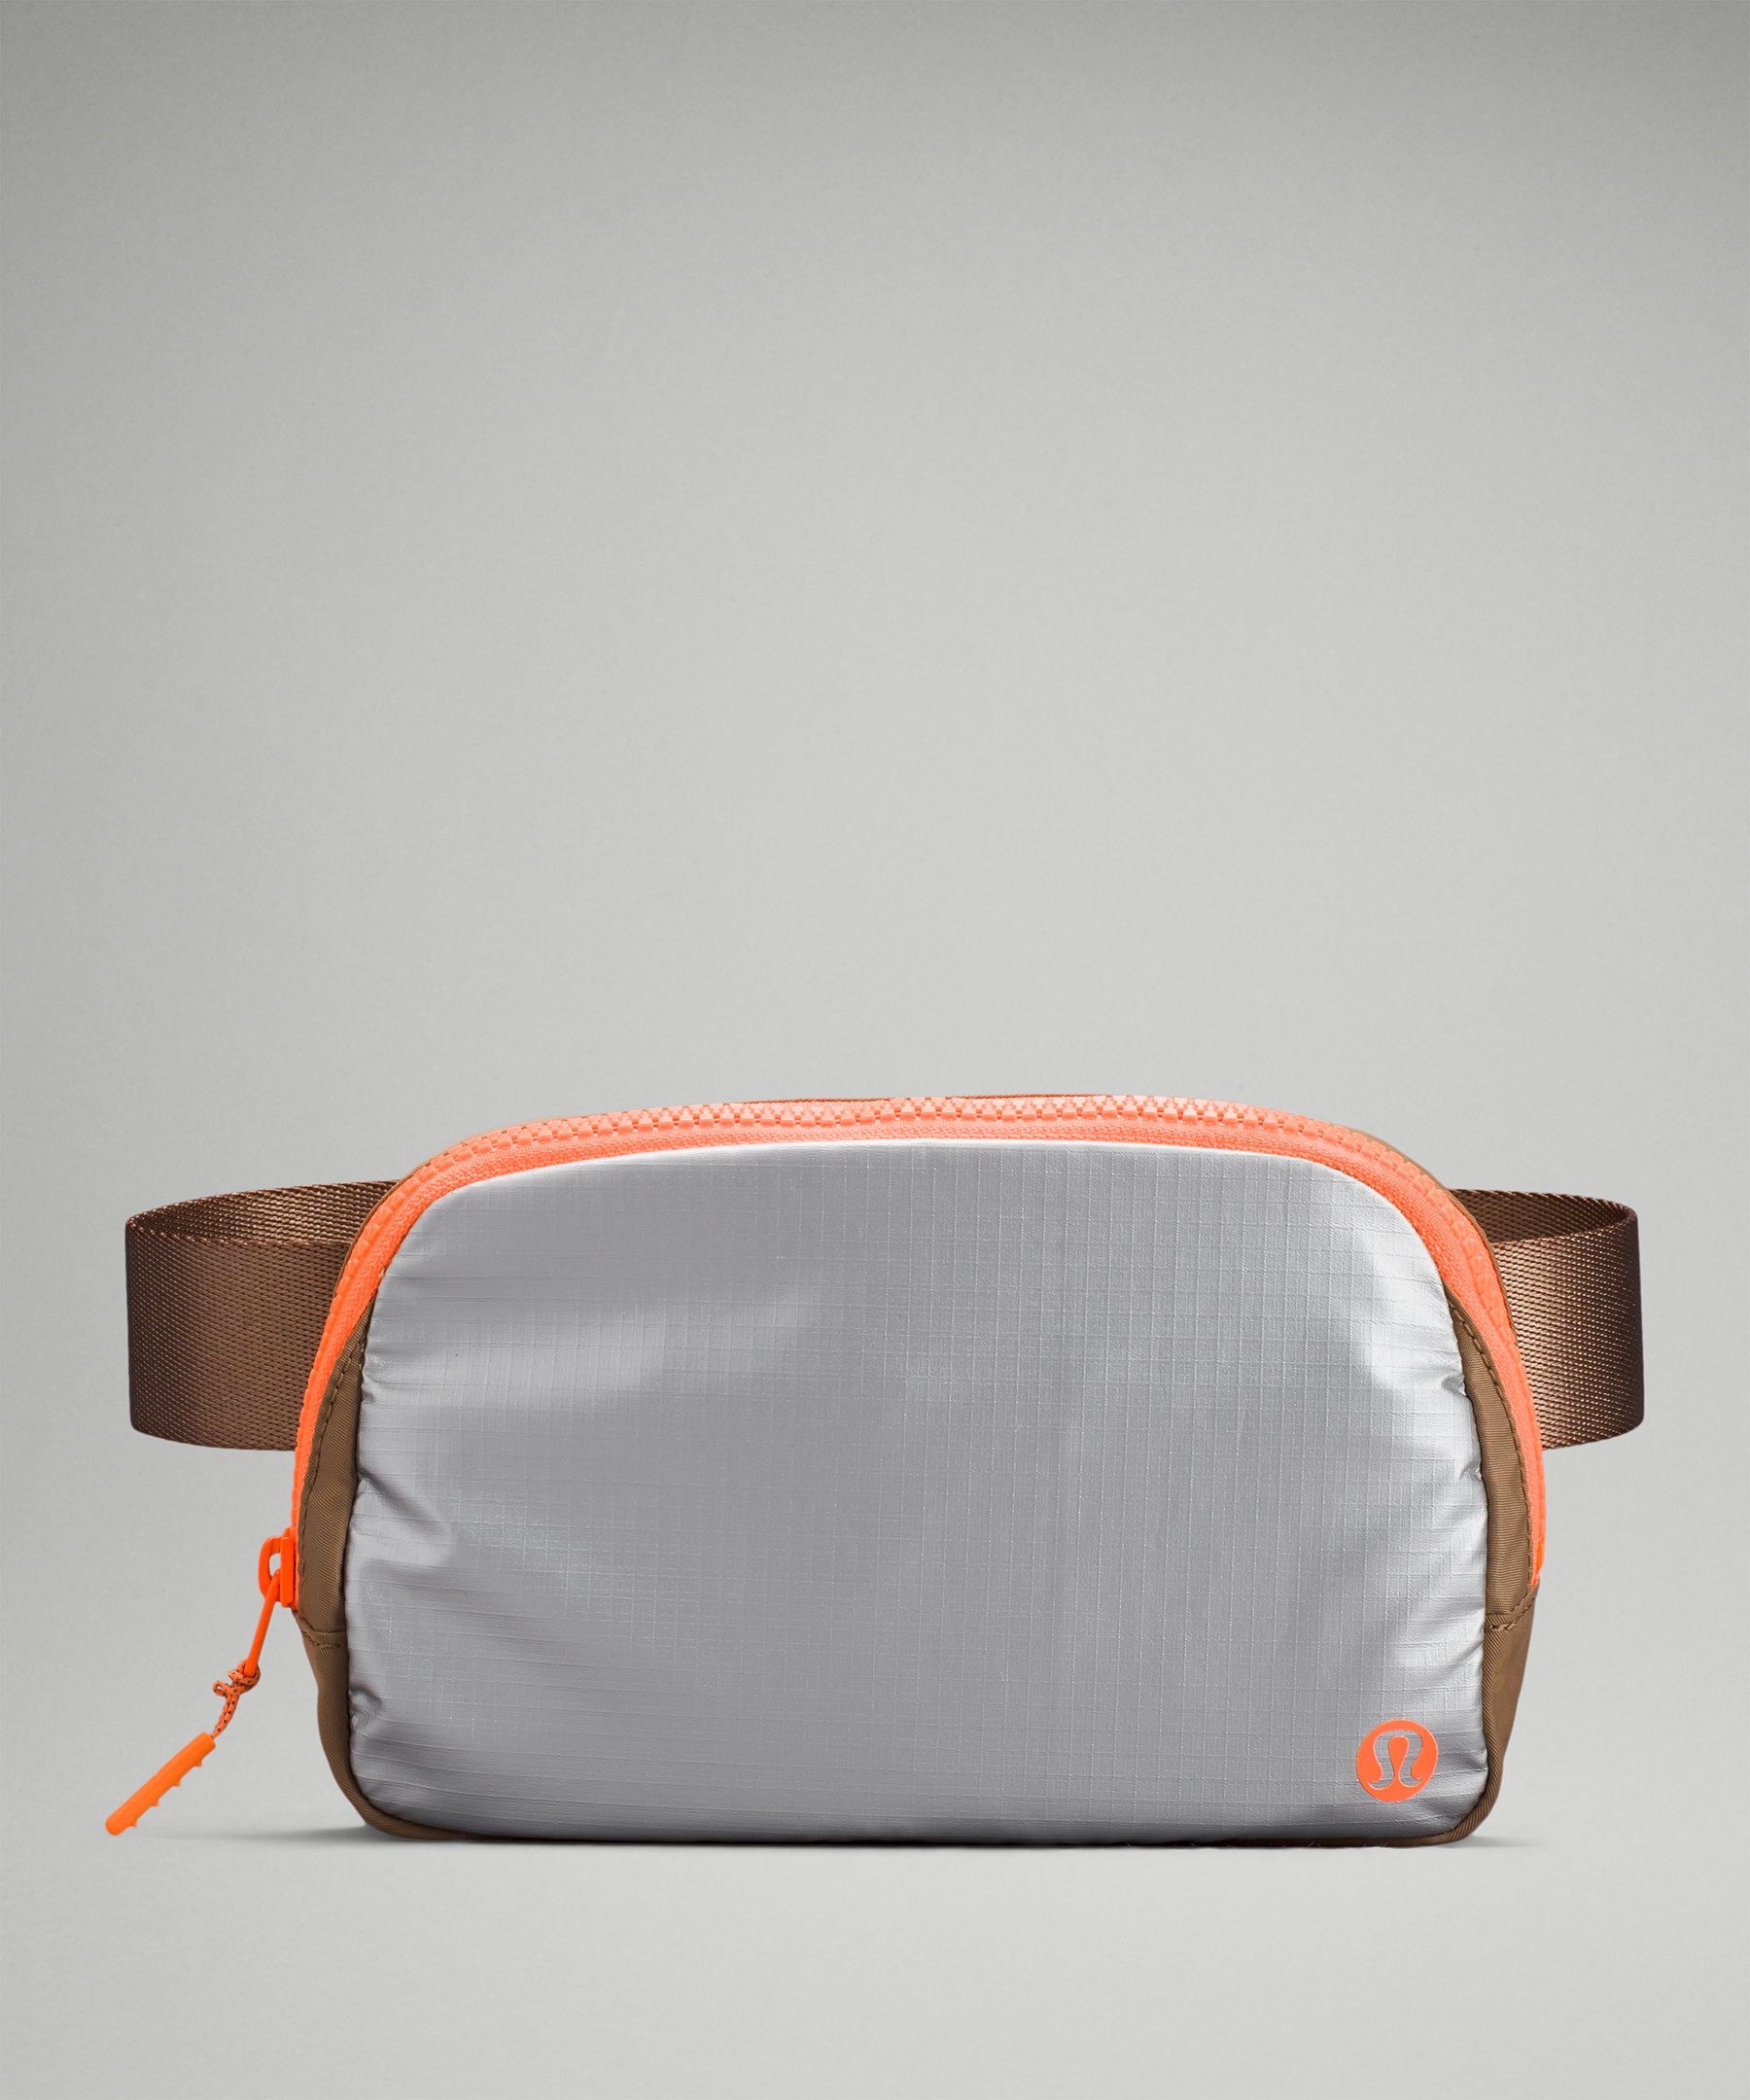 Lululemon Belt Bag Review Plus Size 8